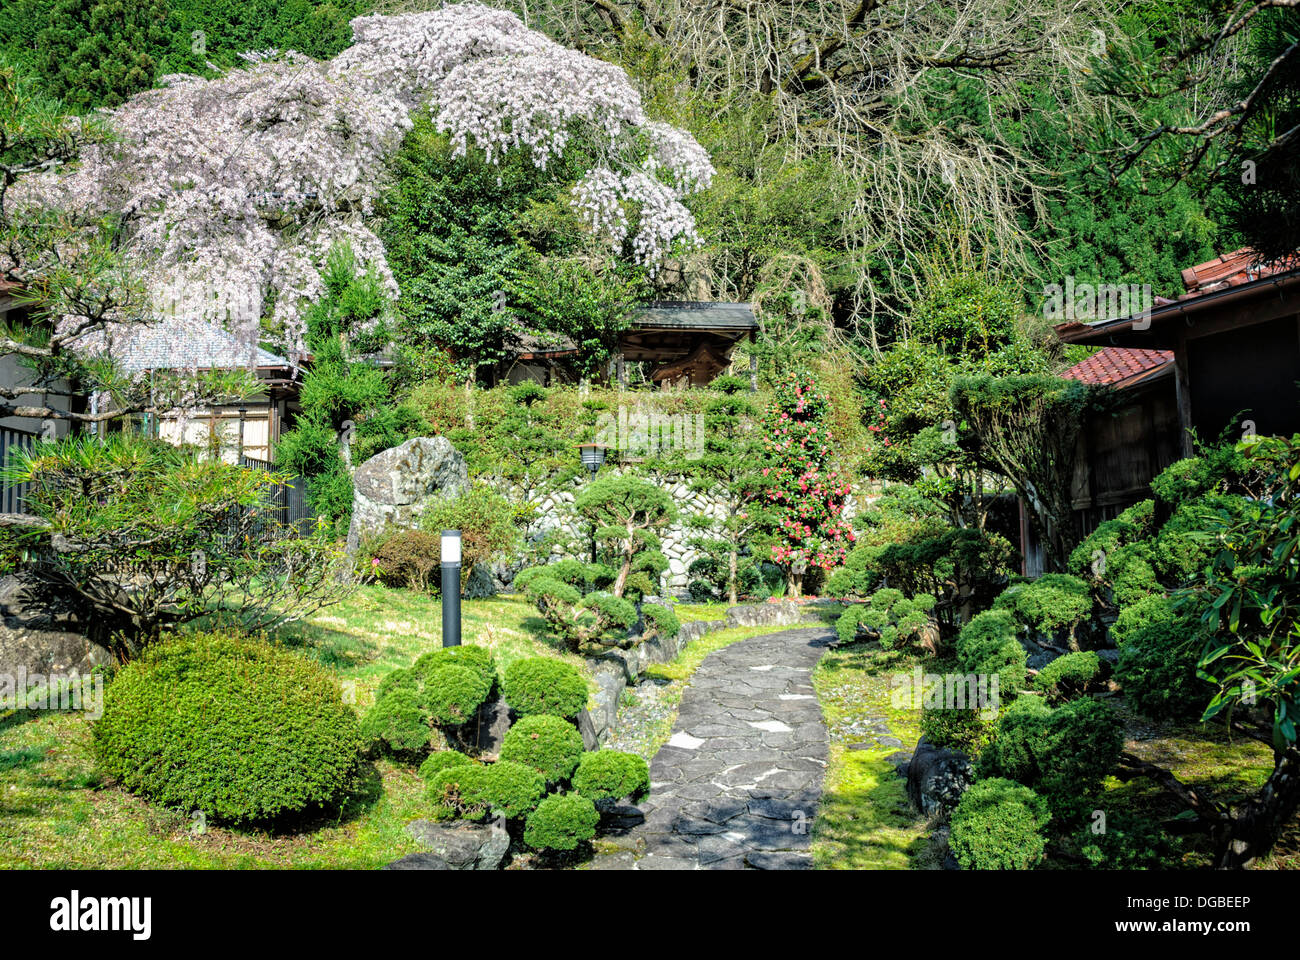 Ornamentado, tradicional jardín japonés con los cerezos en flor (Sakura) y arbustos topiary. Foto de stock